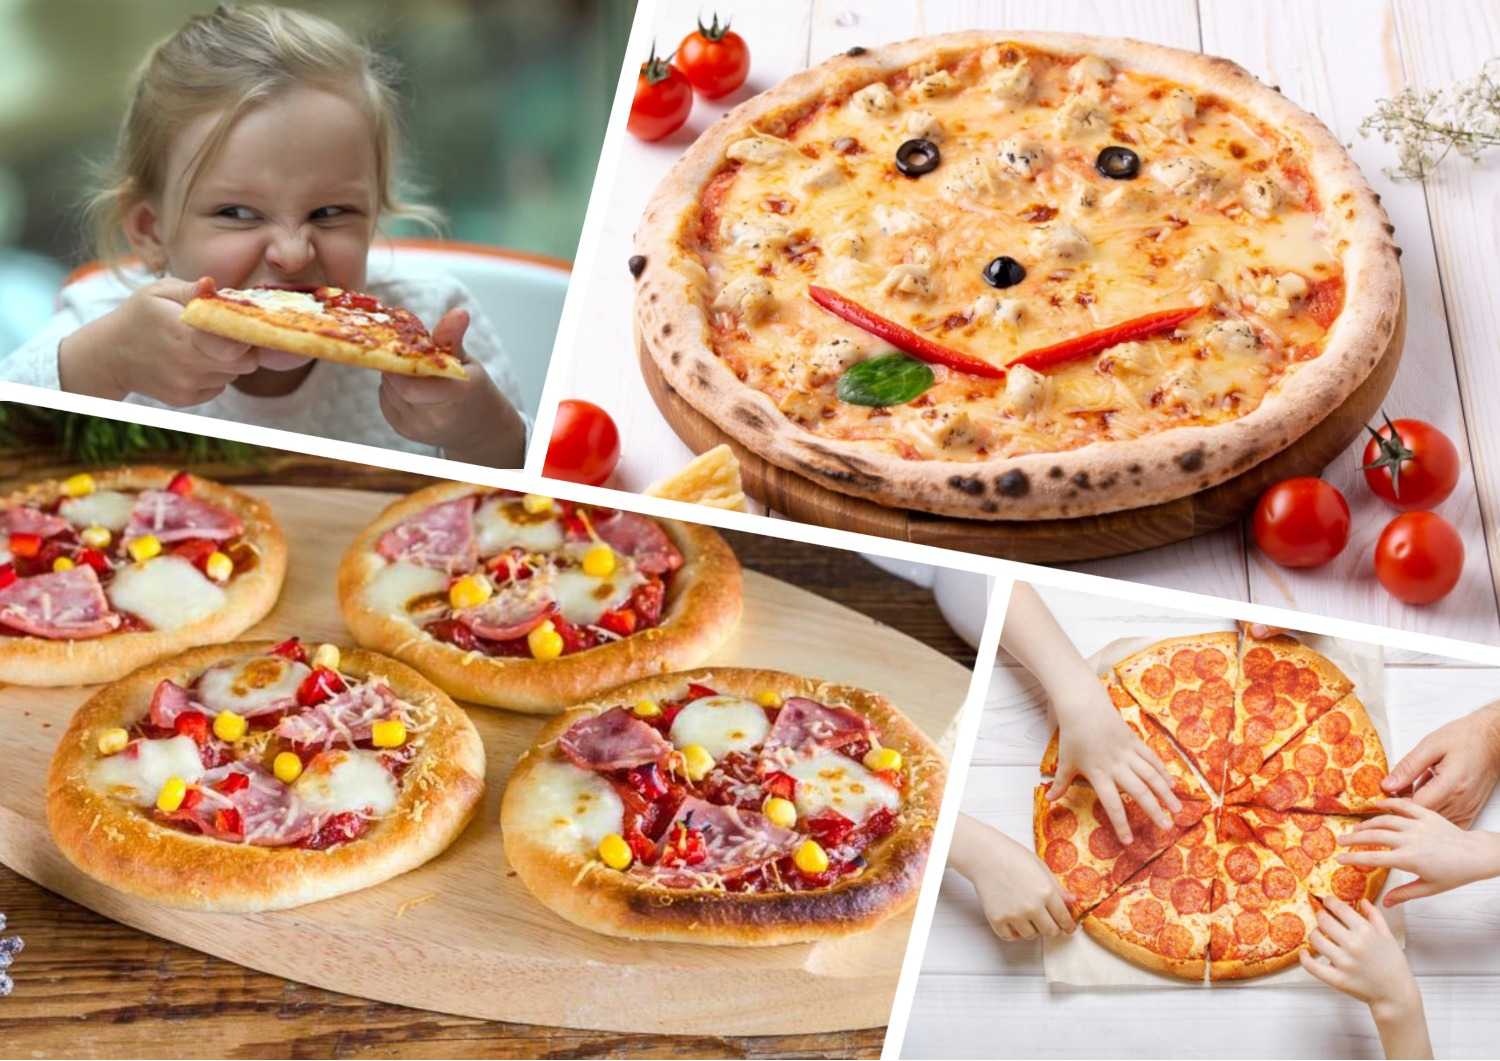 Мы собрали простые и вкусные рецепты пиццы для малышей, которая ничуть не повредит растущему организму ребенка и обязательно поднимет ему настроение Отдавайте предпочтение отварному мясу или фаршу, приготовленному в домашних условиях, и тогда пиццу можно